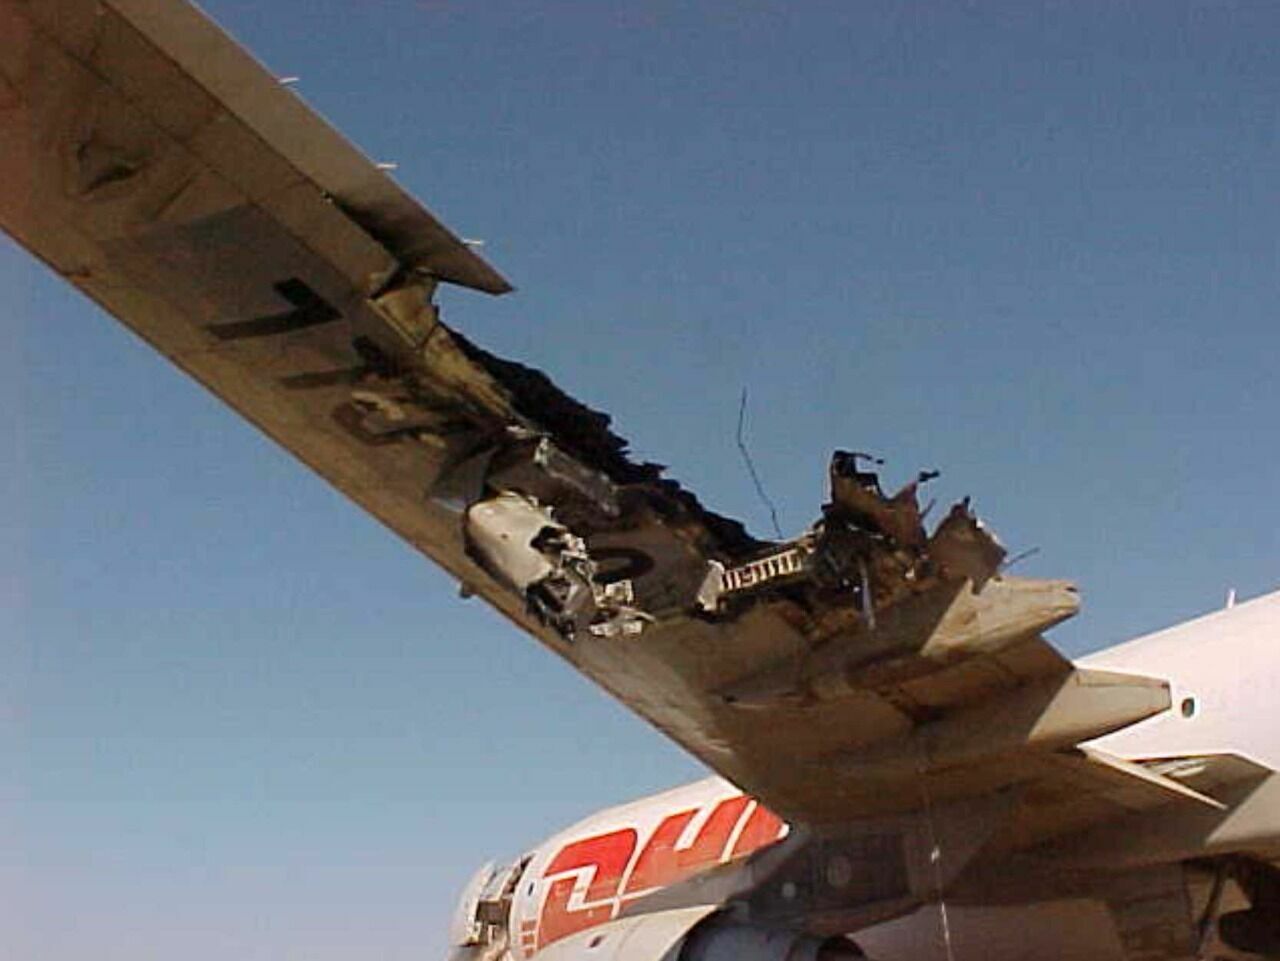  Самолету компании DHL отстрелили крыло.FedEx этого не хочет